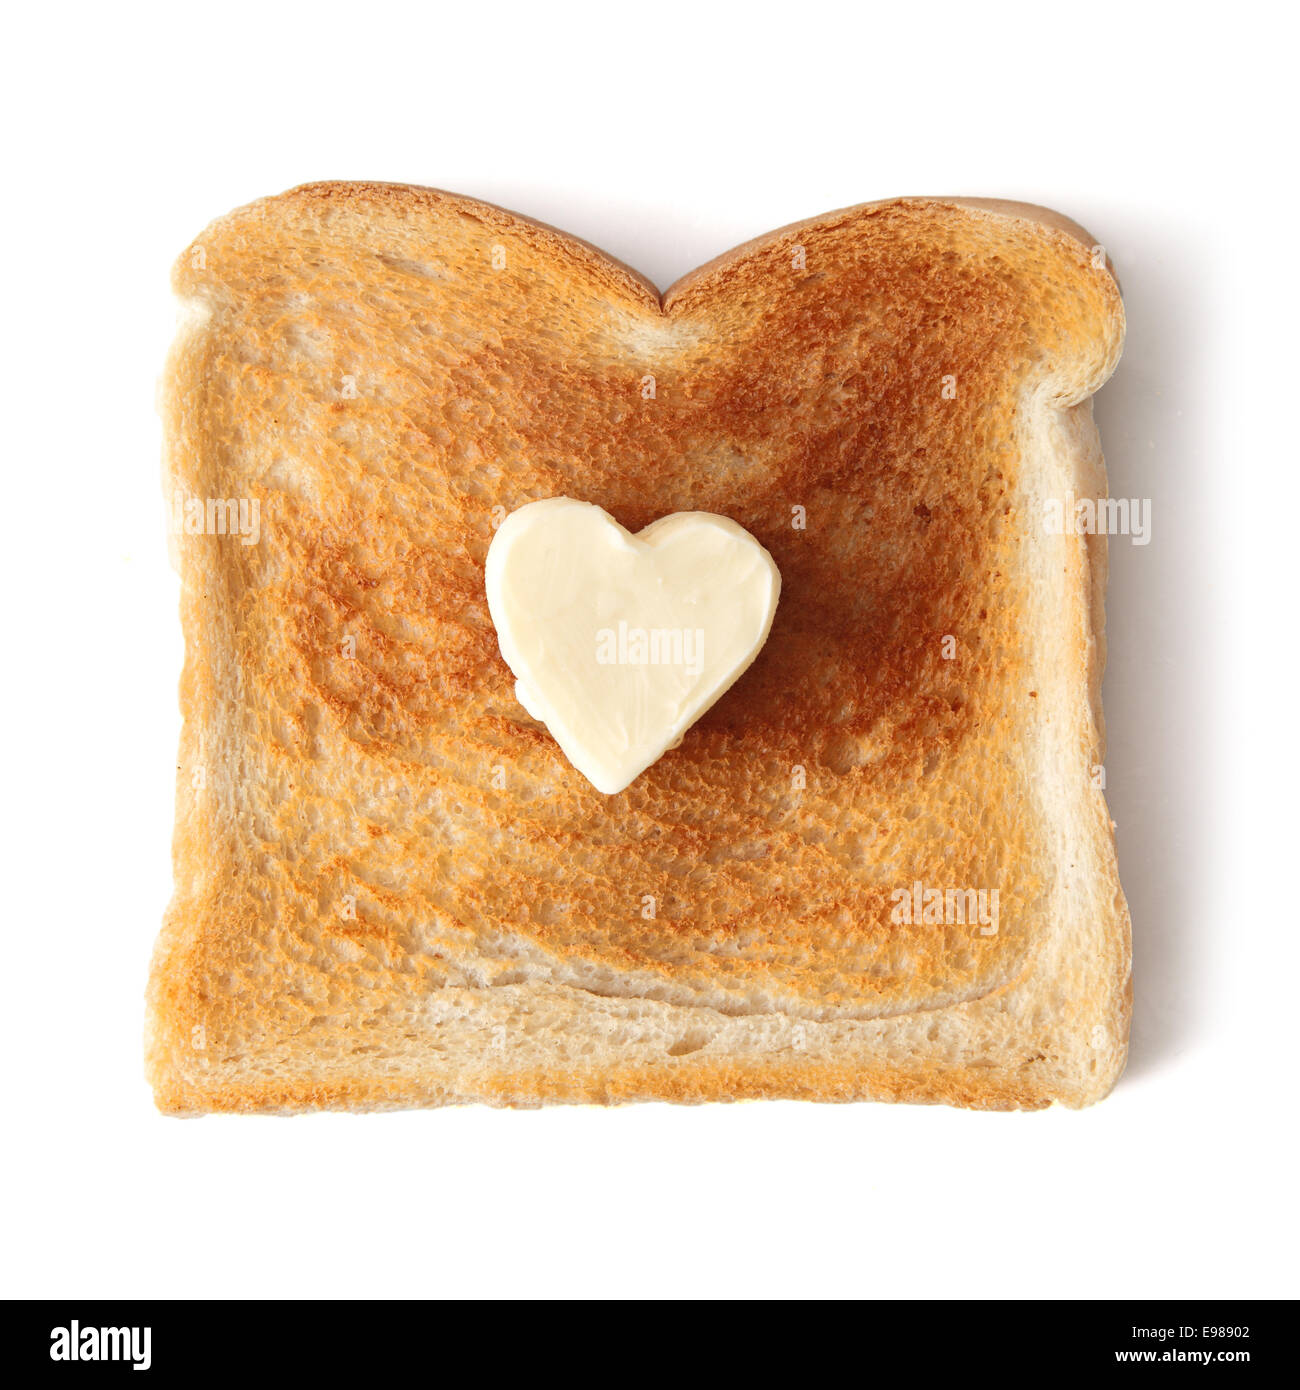 Rebanada de pan blanco tostado sobre un fondo blanco. Una mantequilla pat en la forma de un corazón de amor se ha colocado en el centro de la tostada. Foto de stock